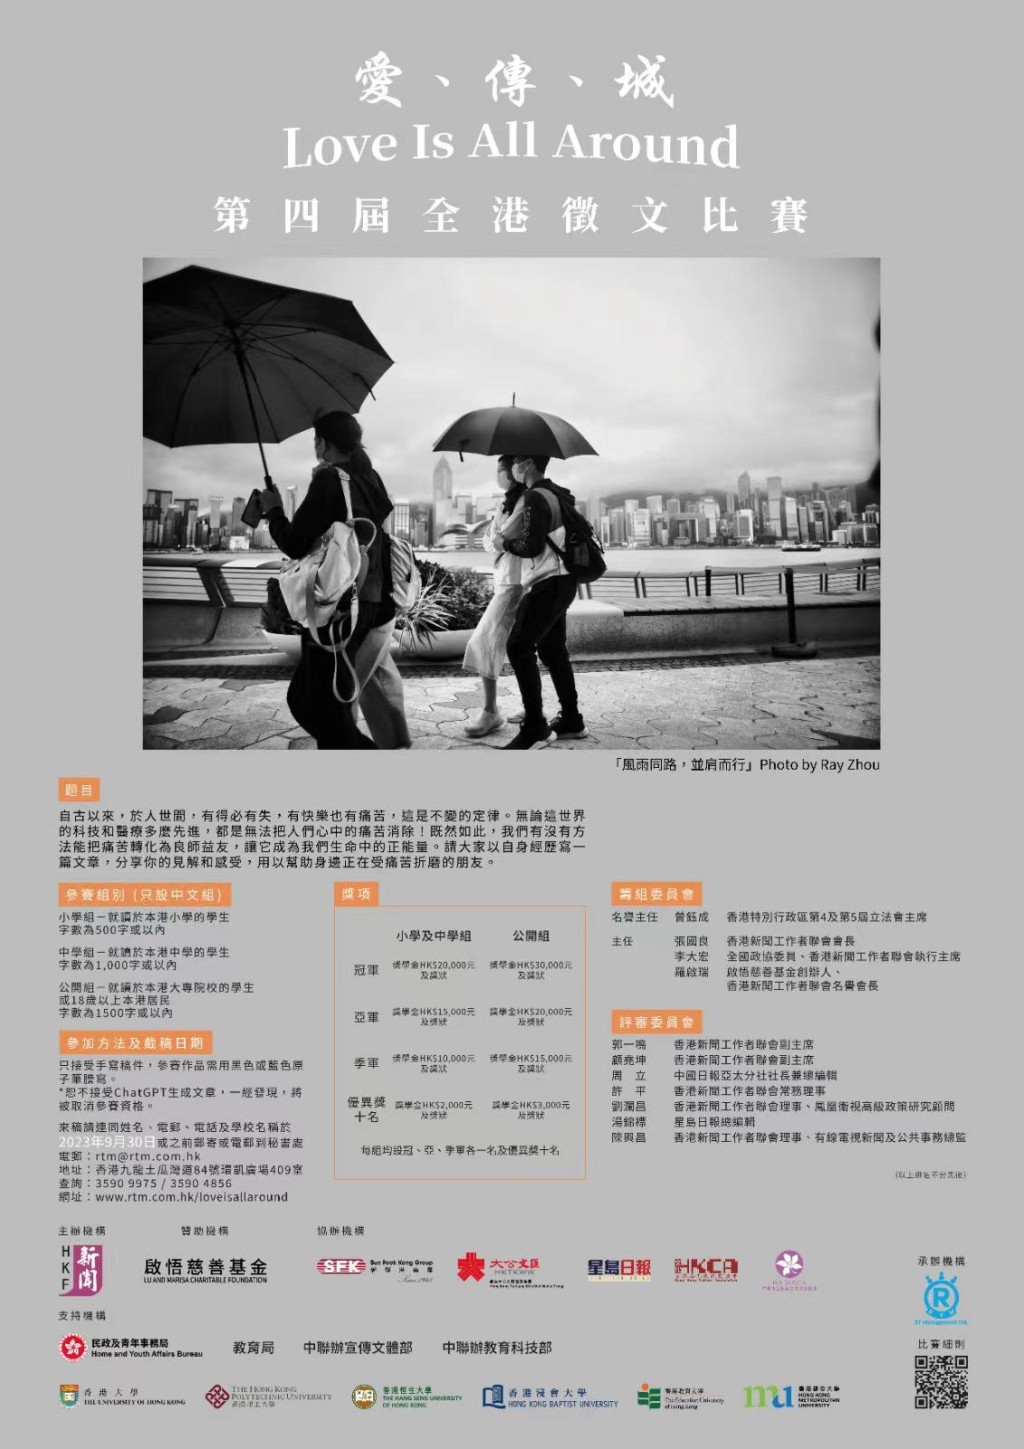 香港新闻工作者联会主办的「爱、传、城 Love Is All Around」第四届全港徵文比赛。